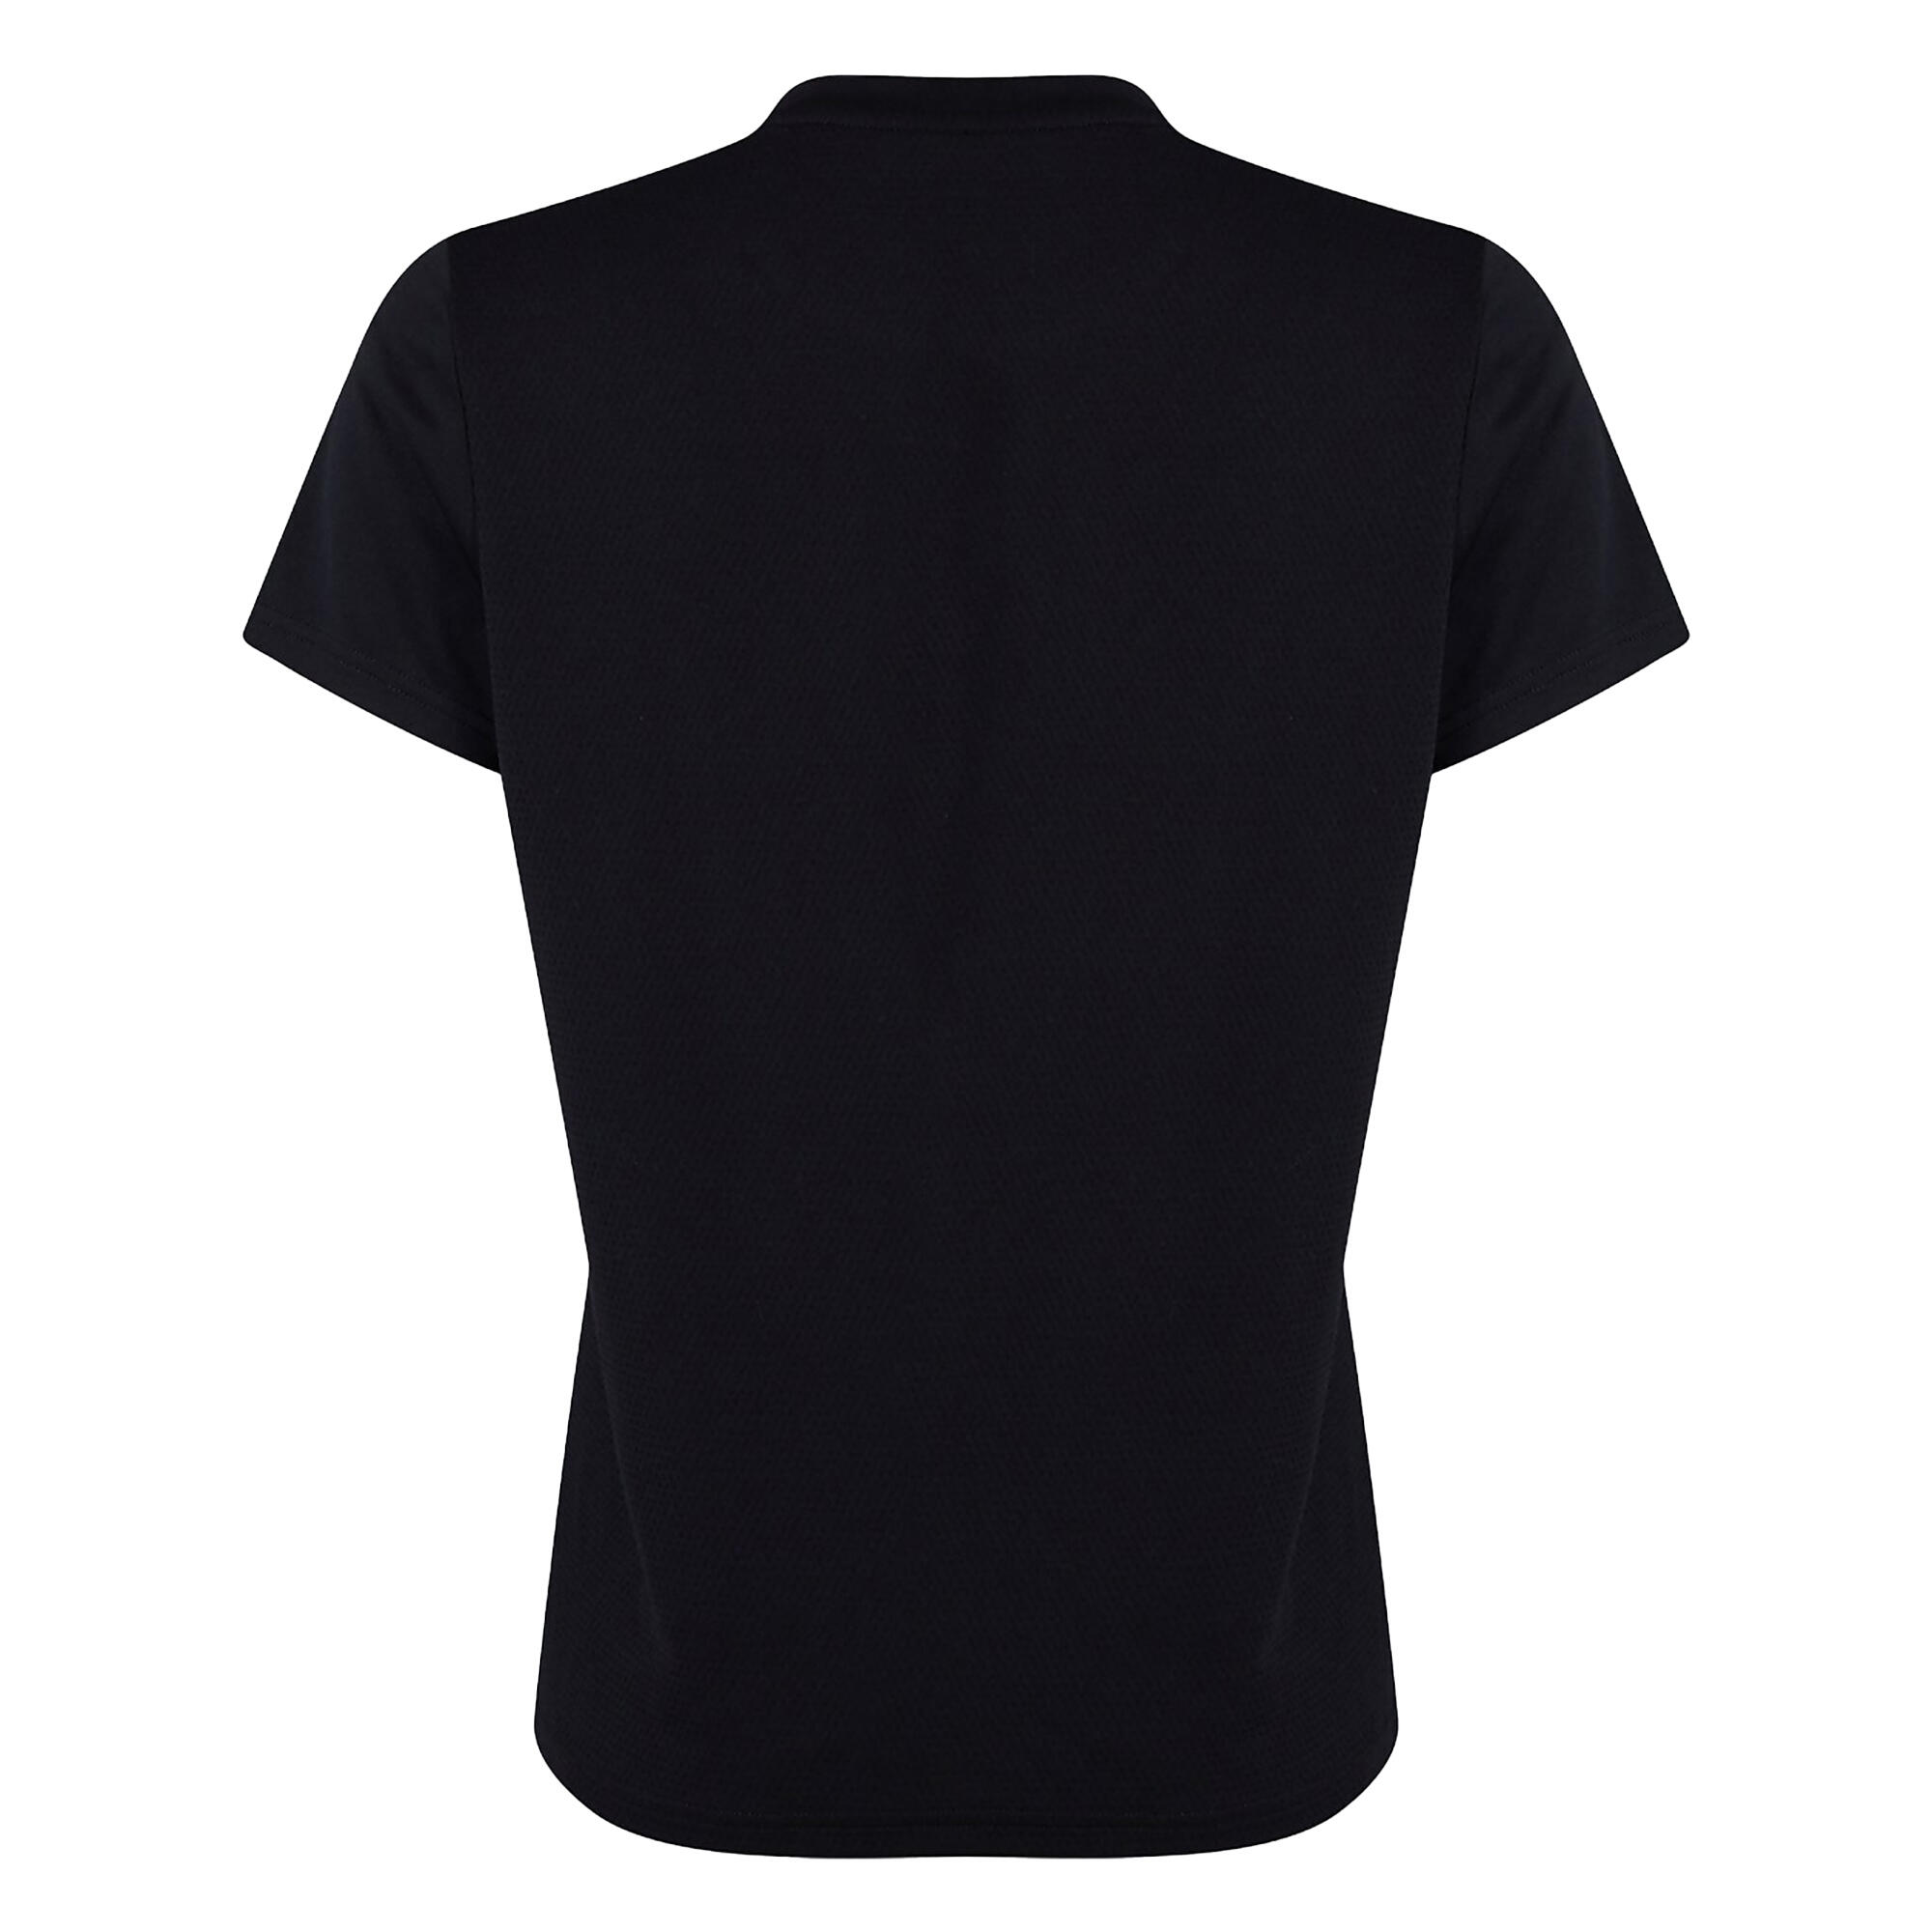 Womens/Ladies Club Dry TShirt (Black) 2/4